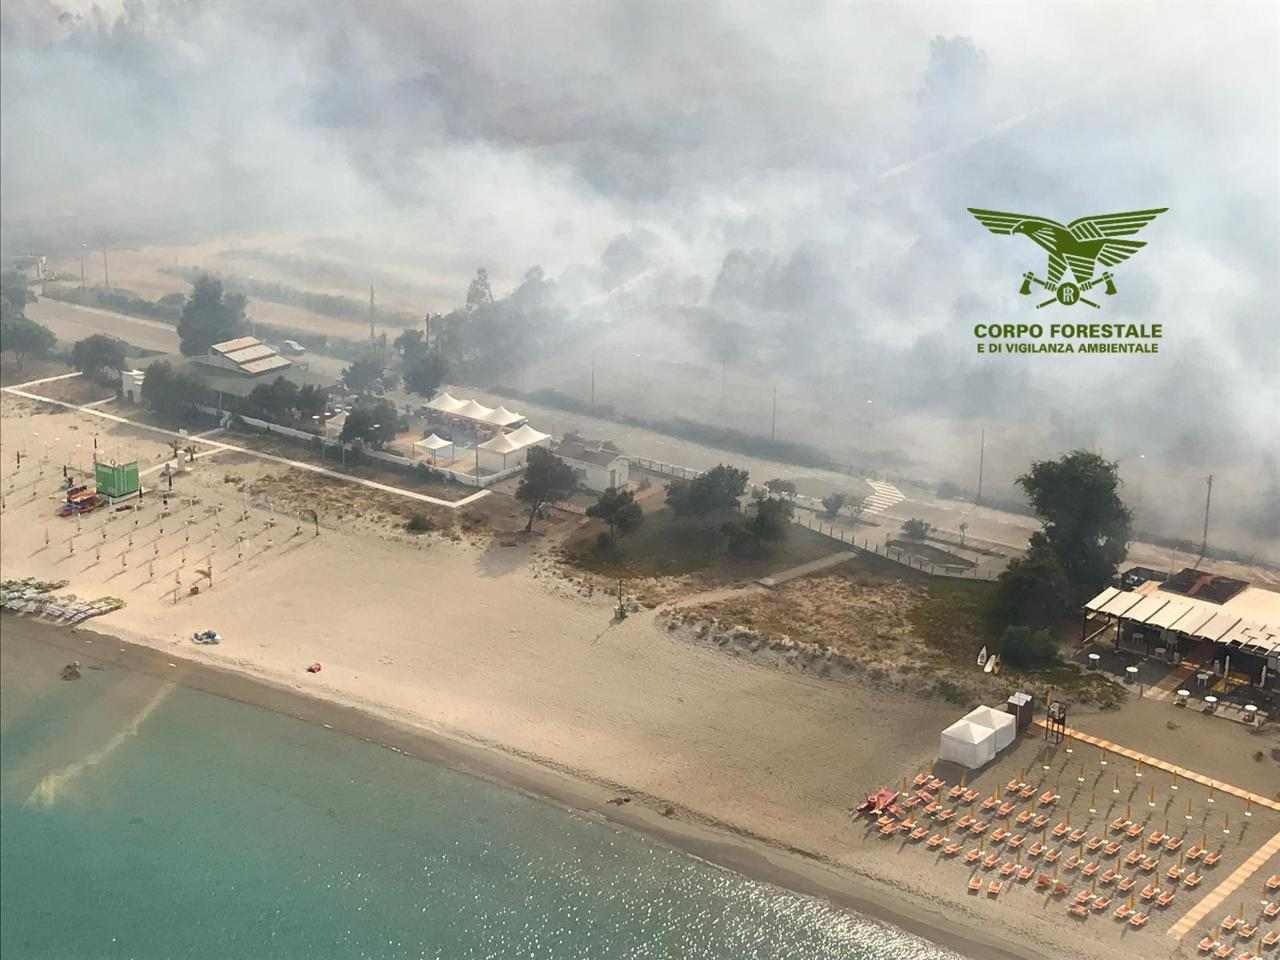 Waldbrand on Sardinia campgrounds and beach evacuates